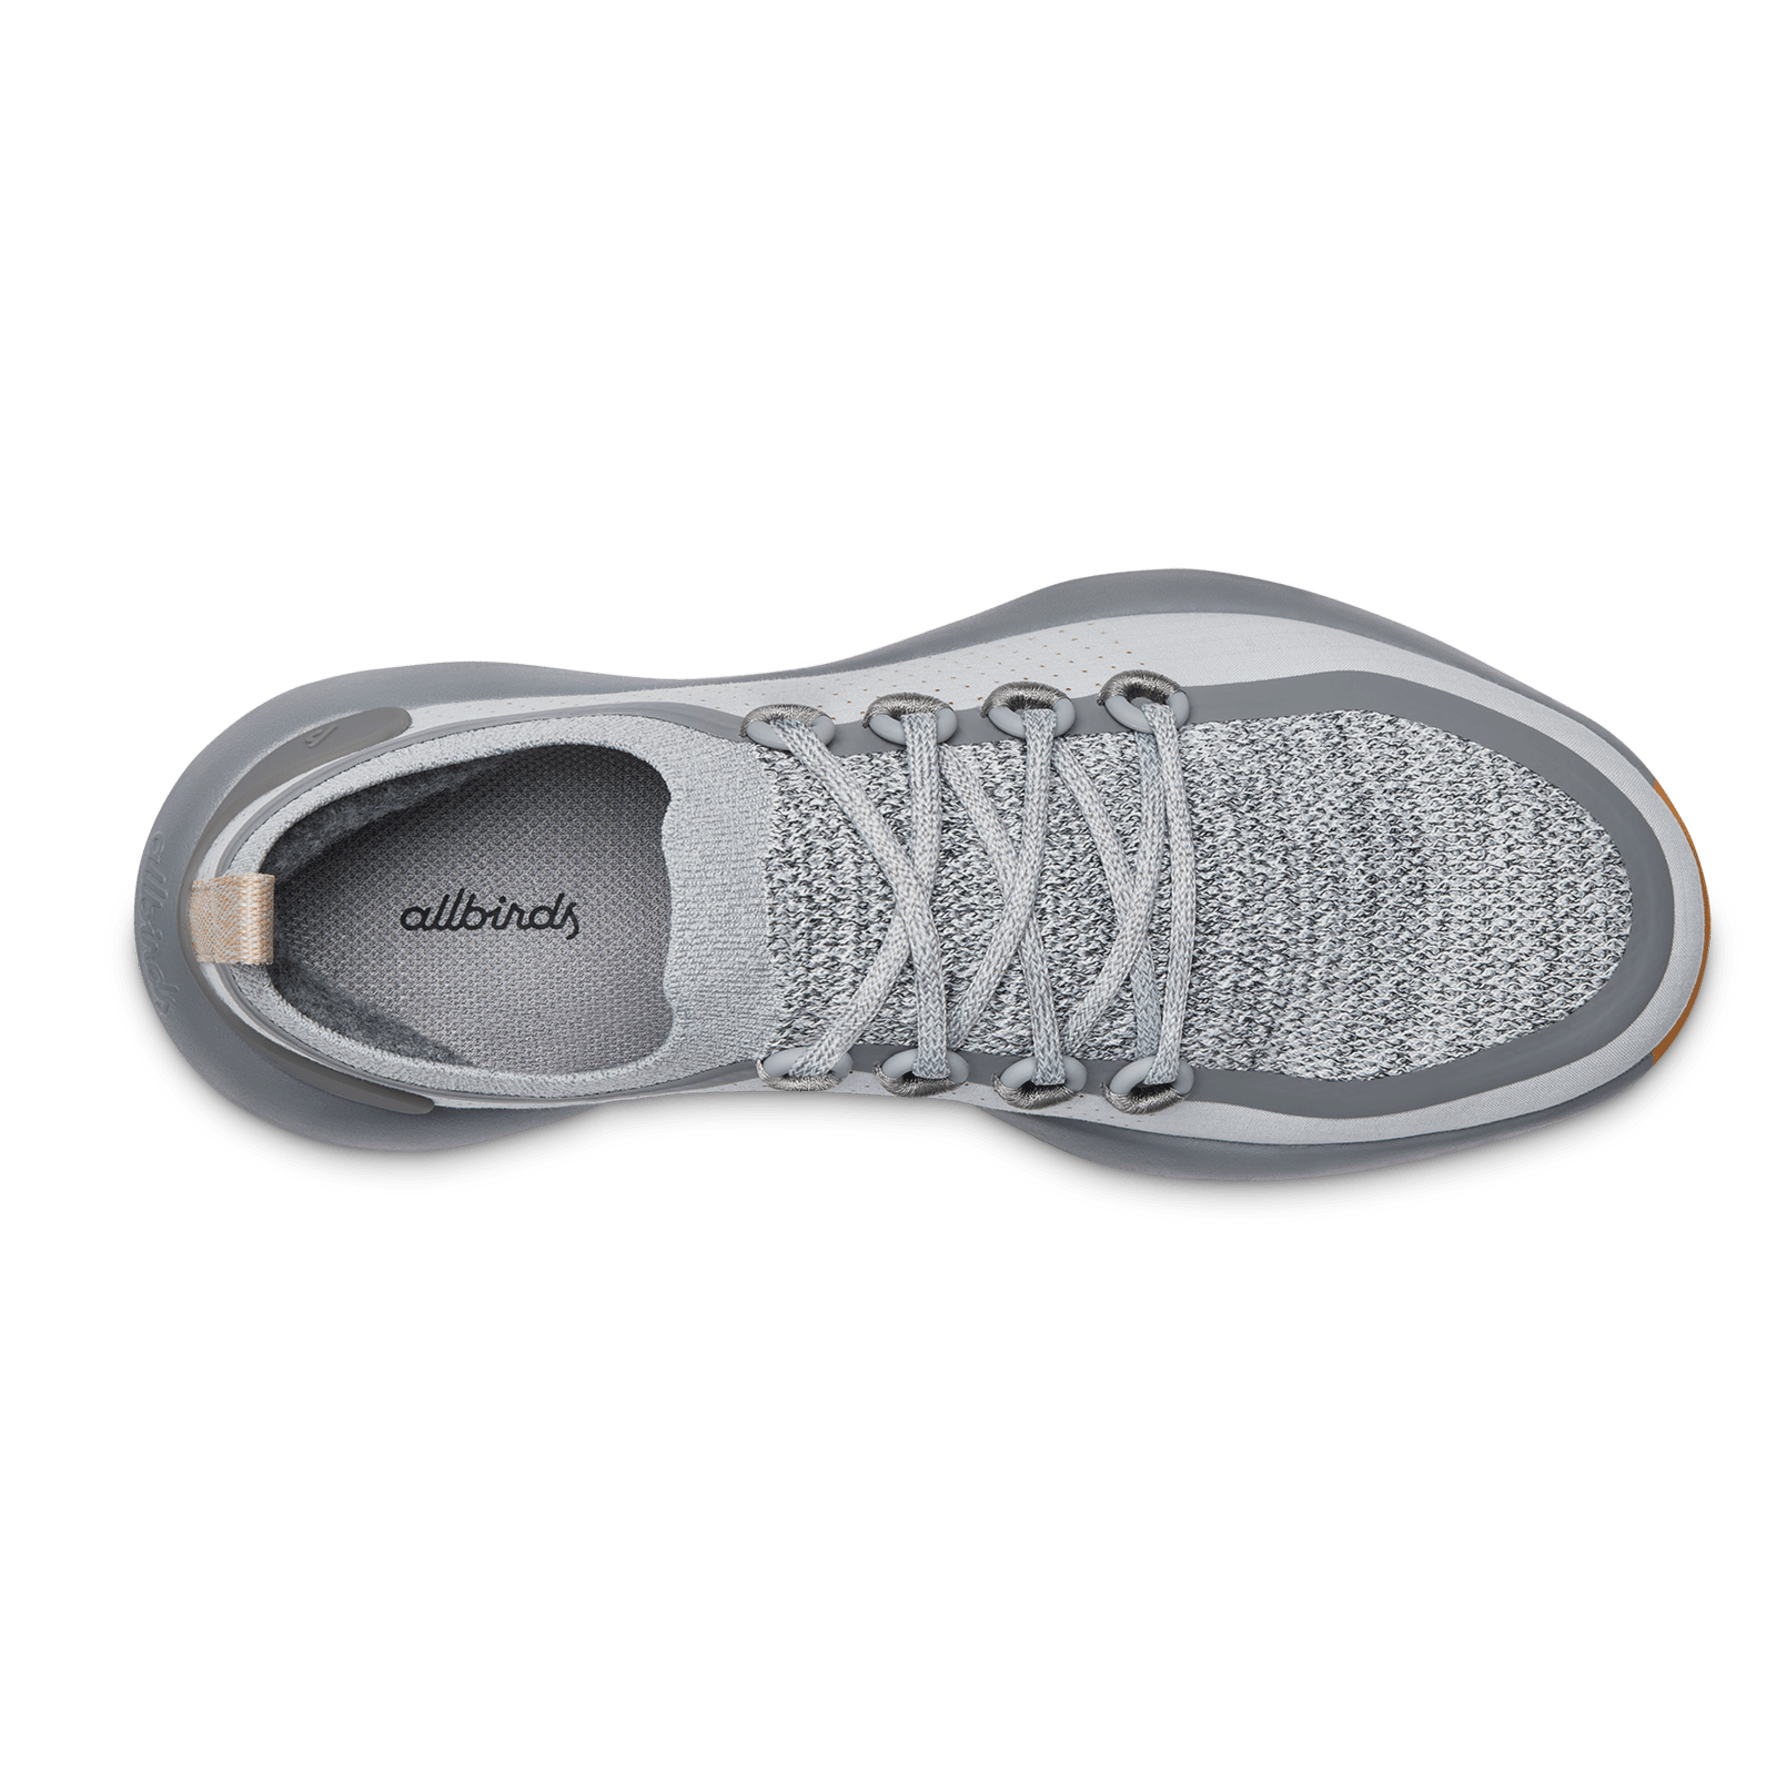 Allbirds Men's Trail Runner SWT Running Shoes, Size 8, Grey/Gum